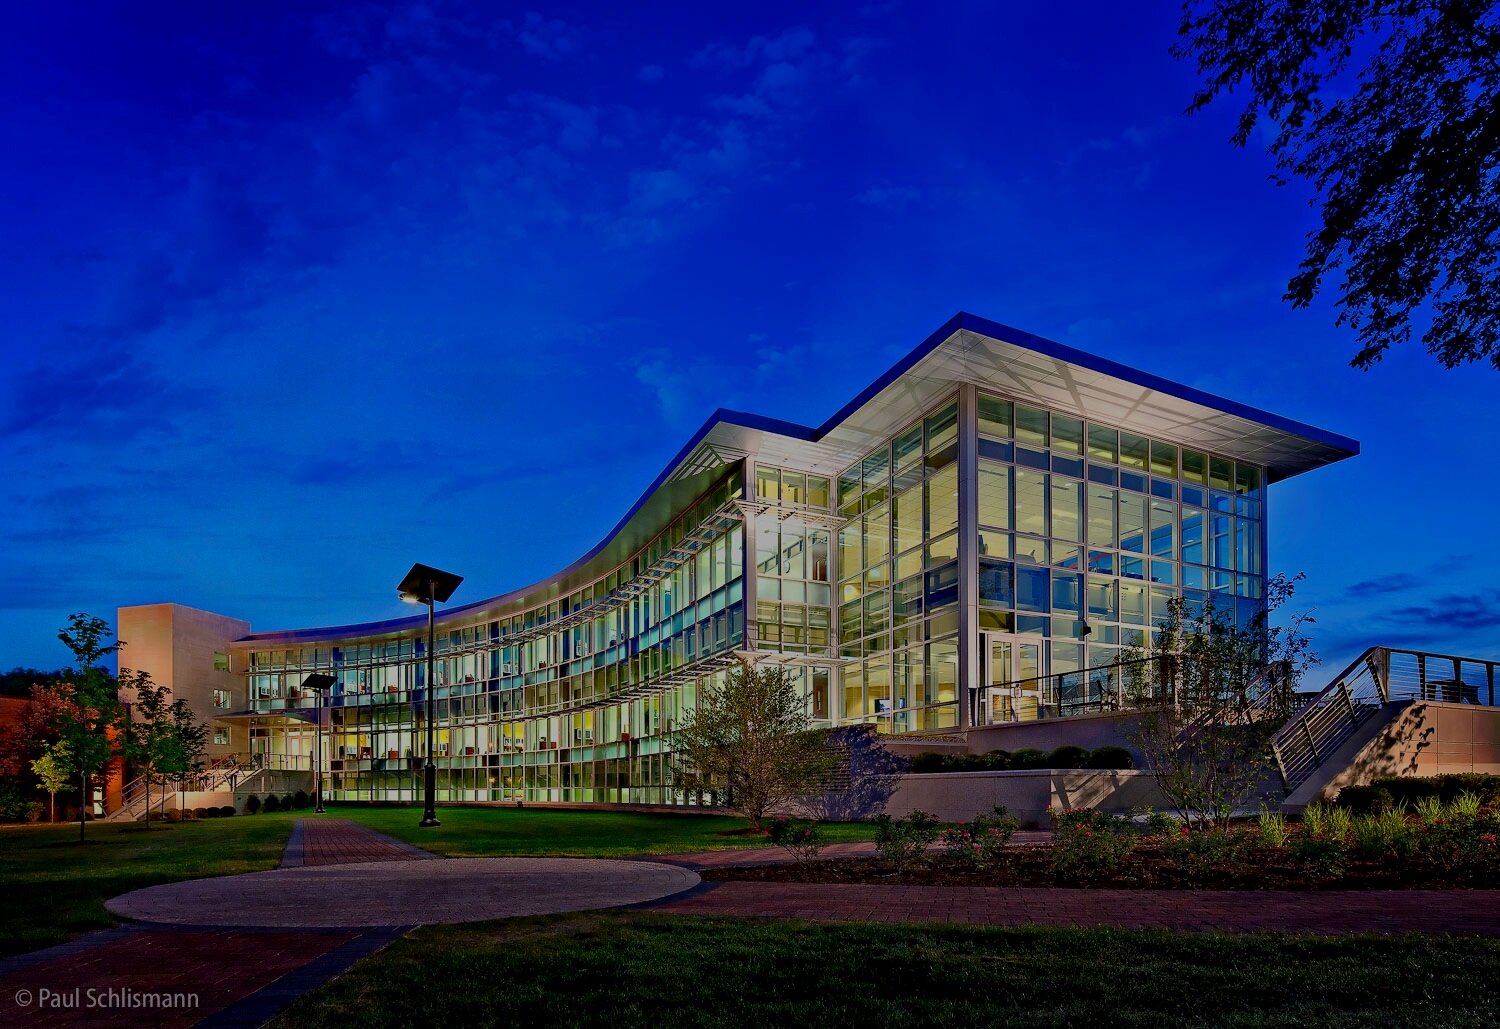 Lewis University by Los Angeles Architectural Photographer Paul Schlismann